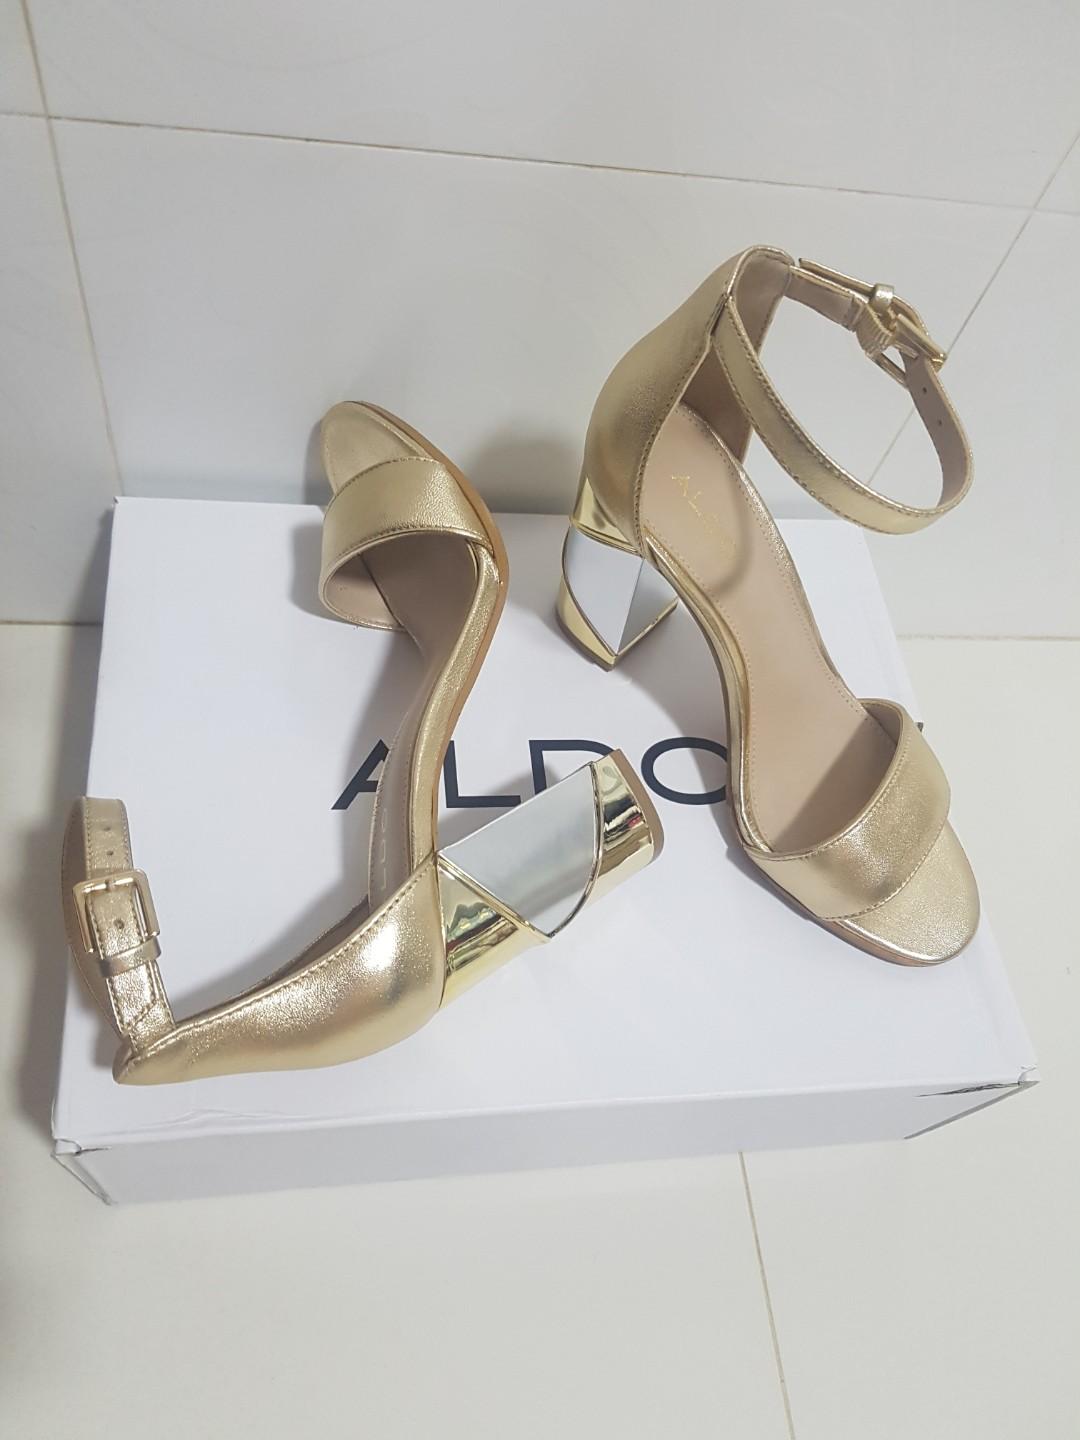 ALDO GOLD HEELS, Women's Fashion, Shoes 